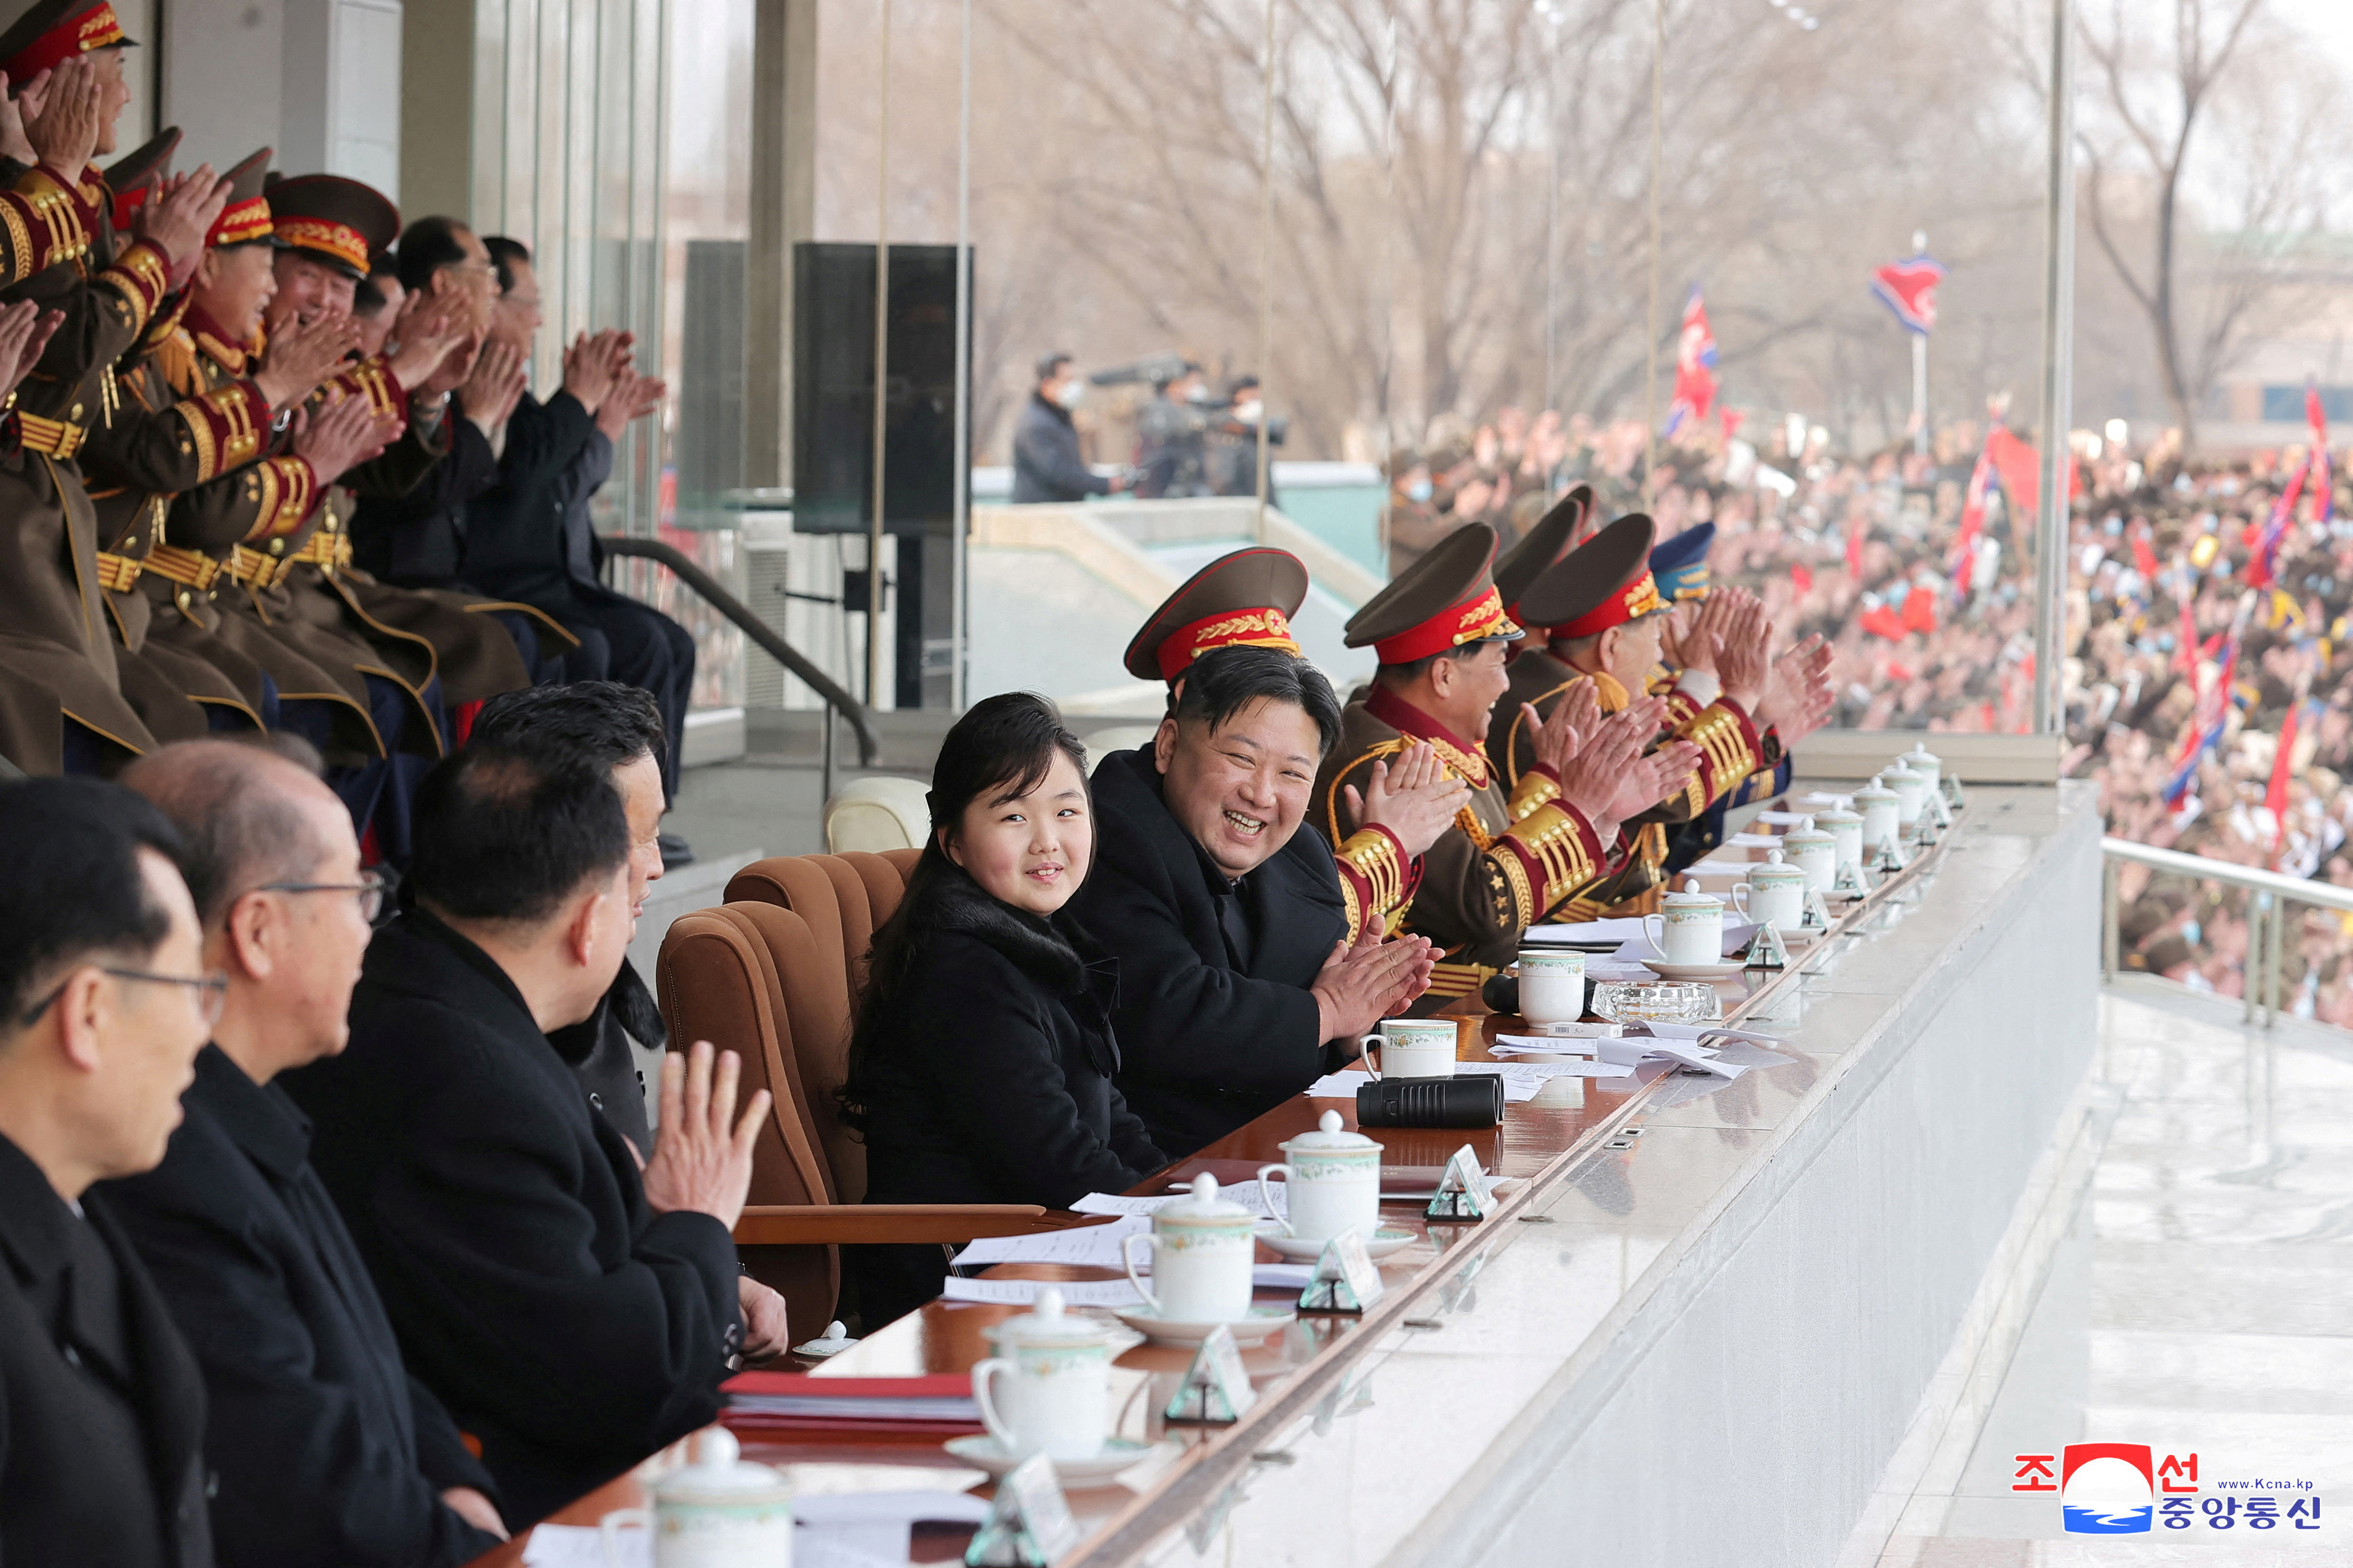 North Korean leader Kim Jong Un watches sport games in Pyongyang